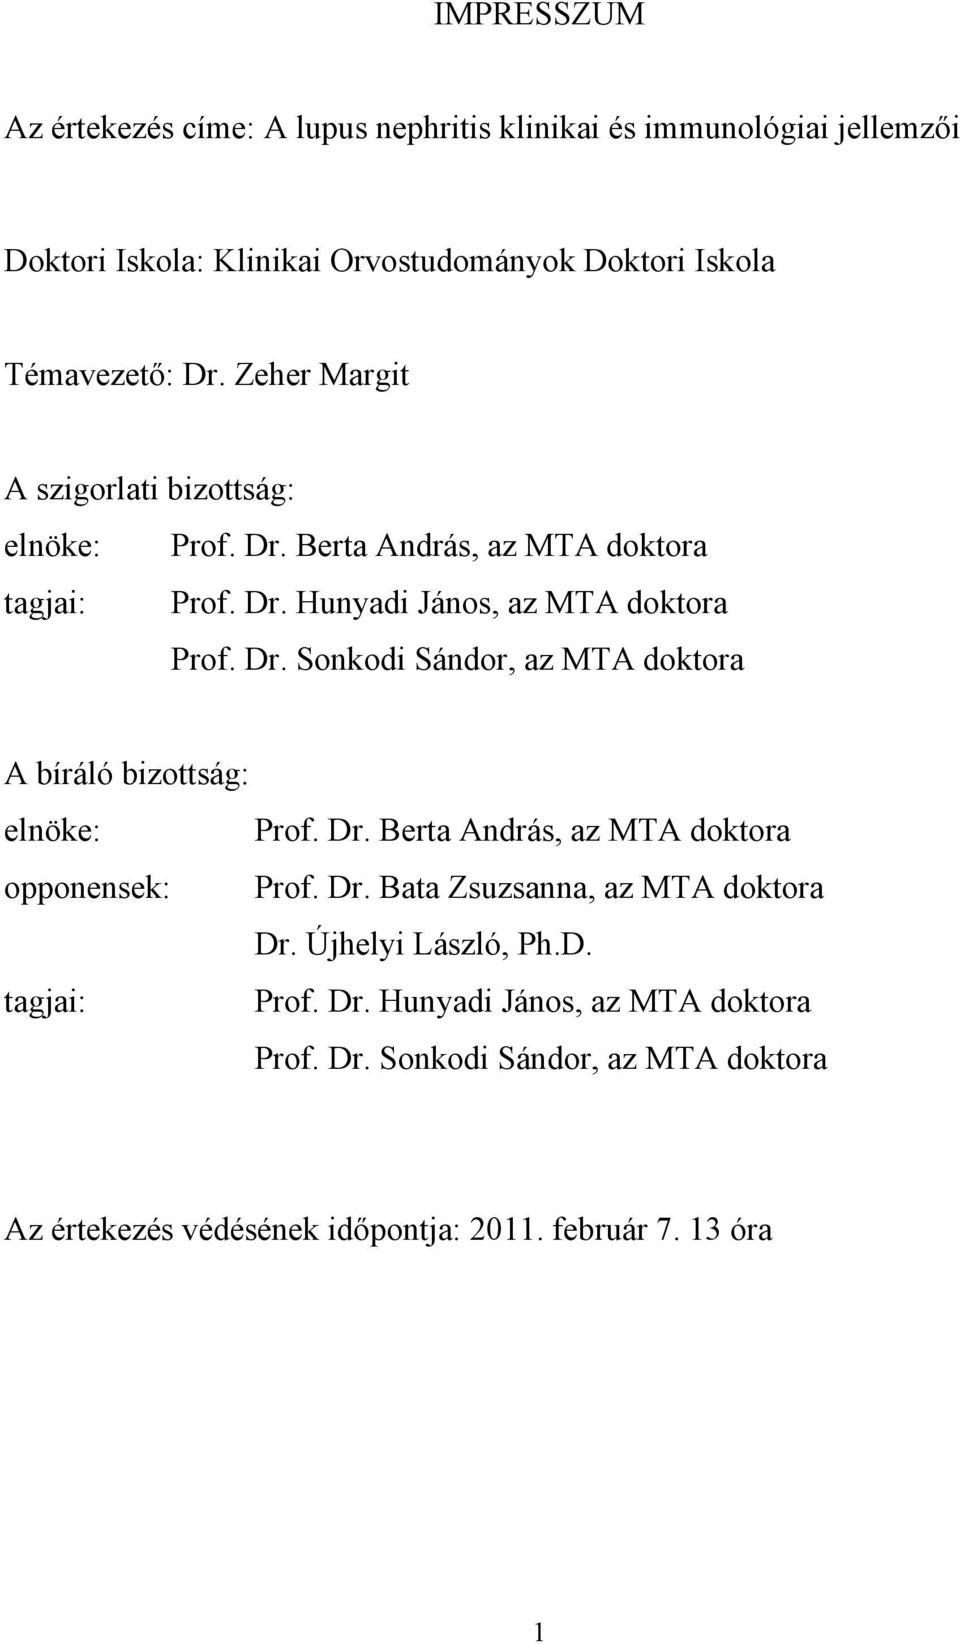 Dr. Berta András, az MTA doktora opponensek: Prof. Dr. Bata Zsuzsanna, az MTA doktora Dr. Újhelyi László, Ph.D. tagjai: Prof. Dr. Hunyadi János, az MTA doktora Prof.